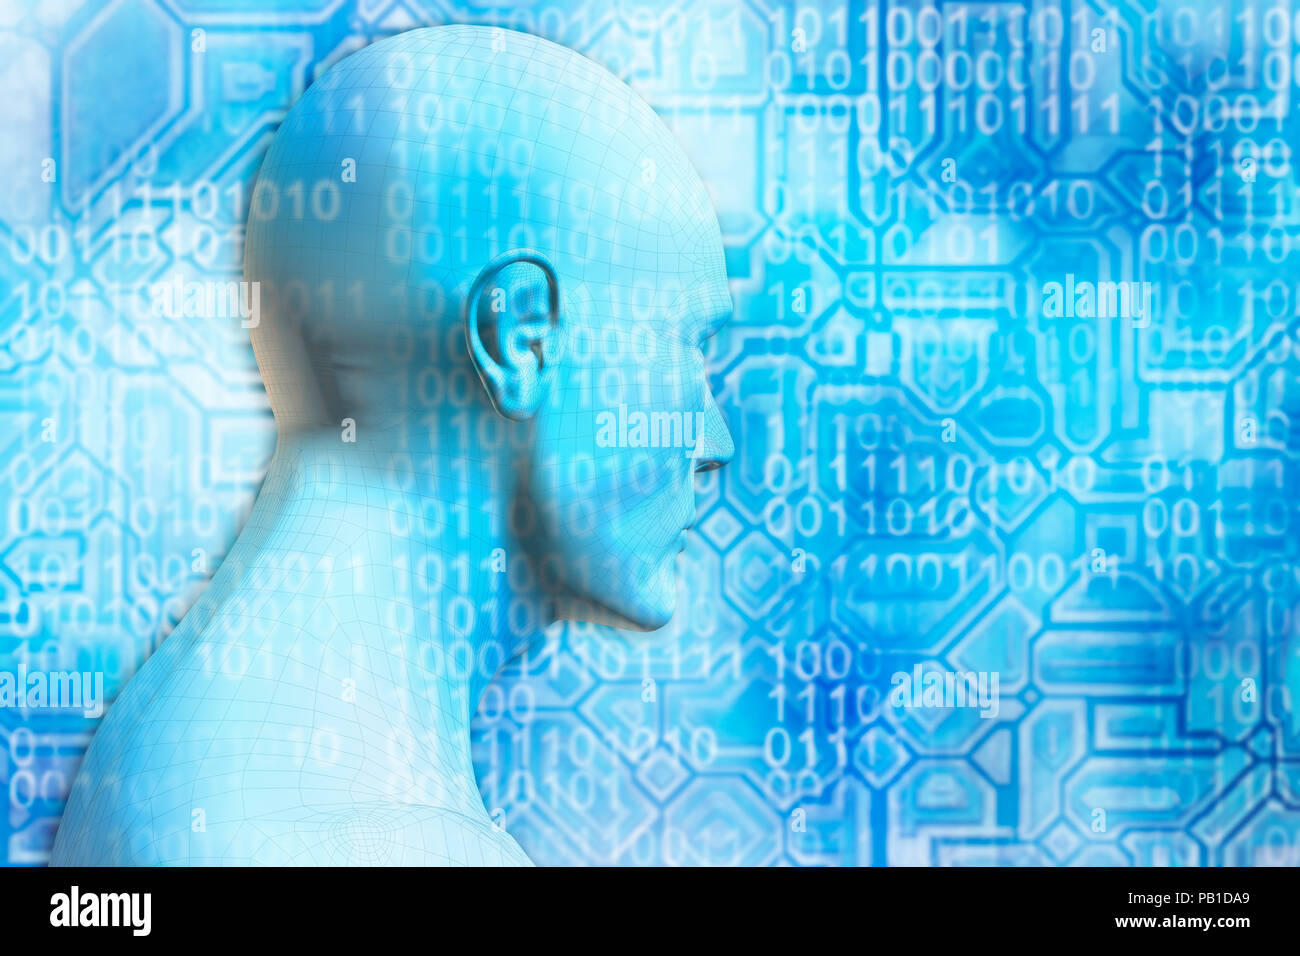 L'intelligence artificielle et de singularité technologique concept Banque D'Images